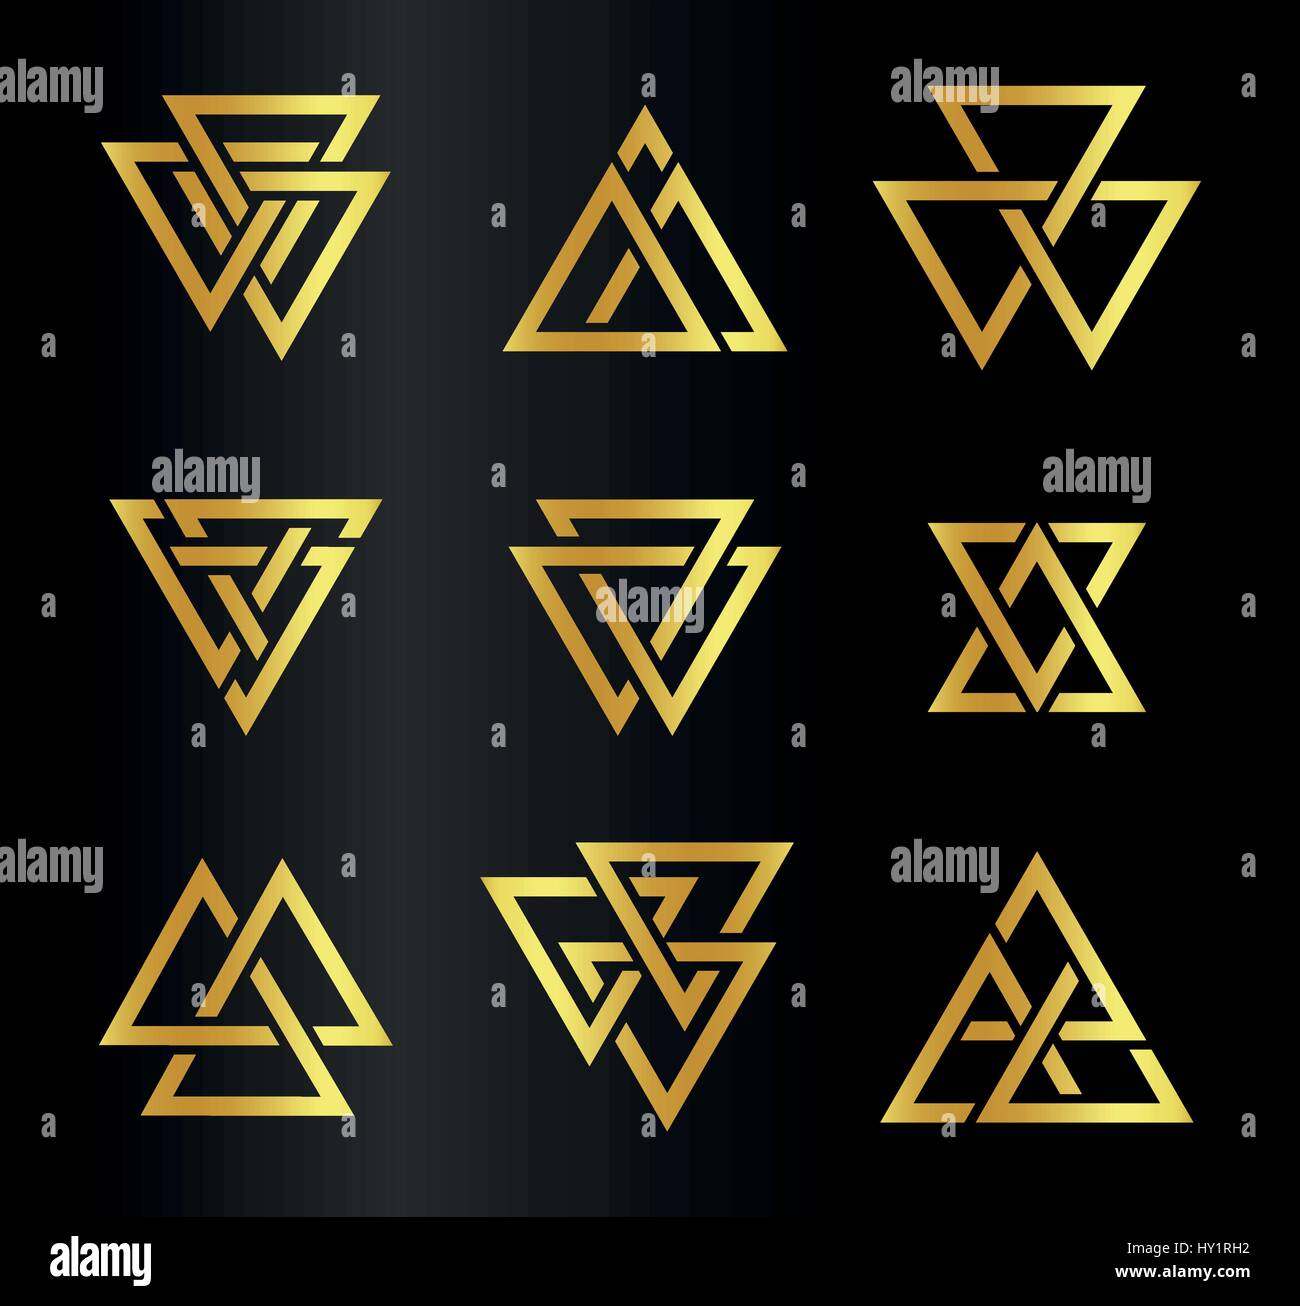 Isolierte abstrakte goldene Farbe Dreiecke Kontur Logo setzen auf schwarzem Hintergrund, geometrische Dreiecksform Logo Collection, gold Luxus-Dekoration-Vektor-illustration Stock Vektor